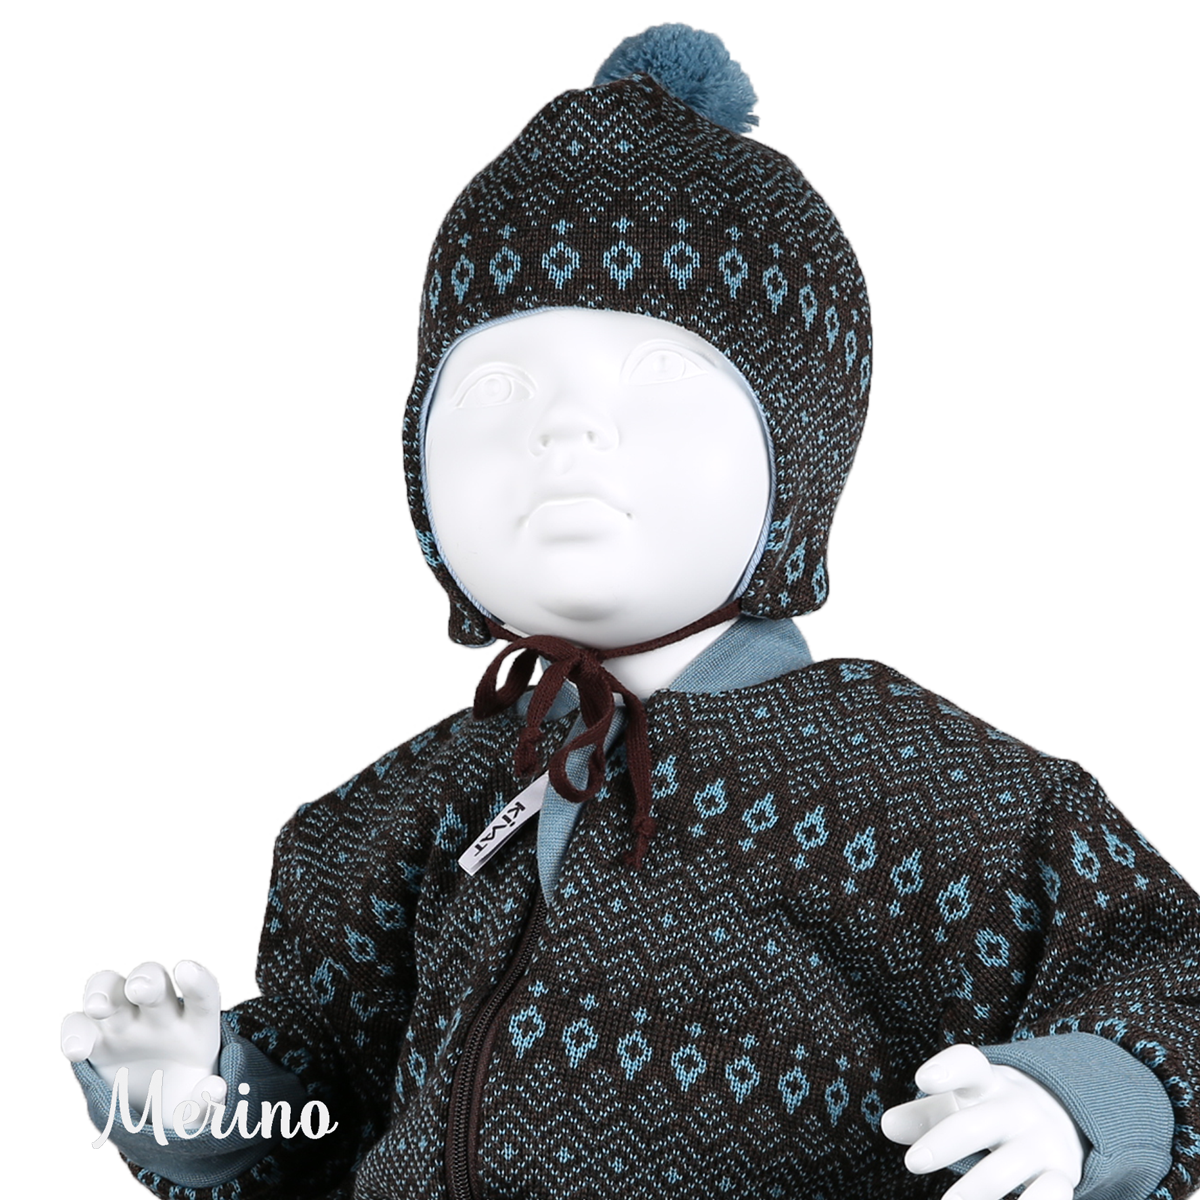 Gem Merino wool baby overall